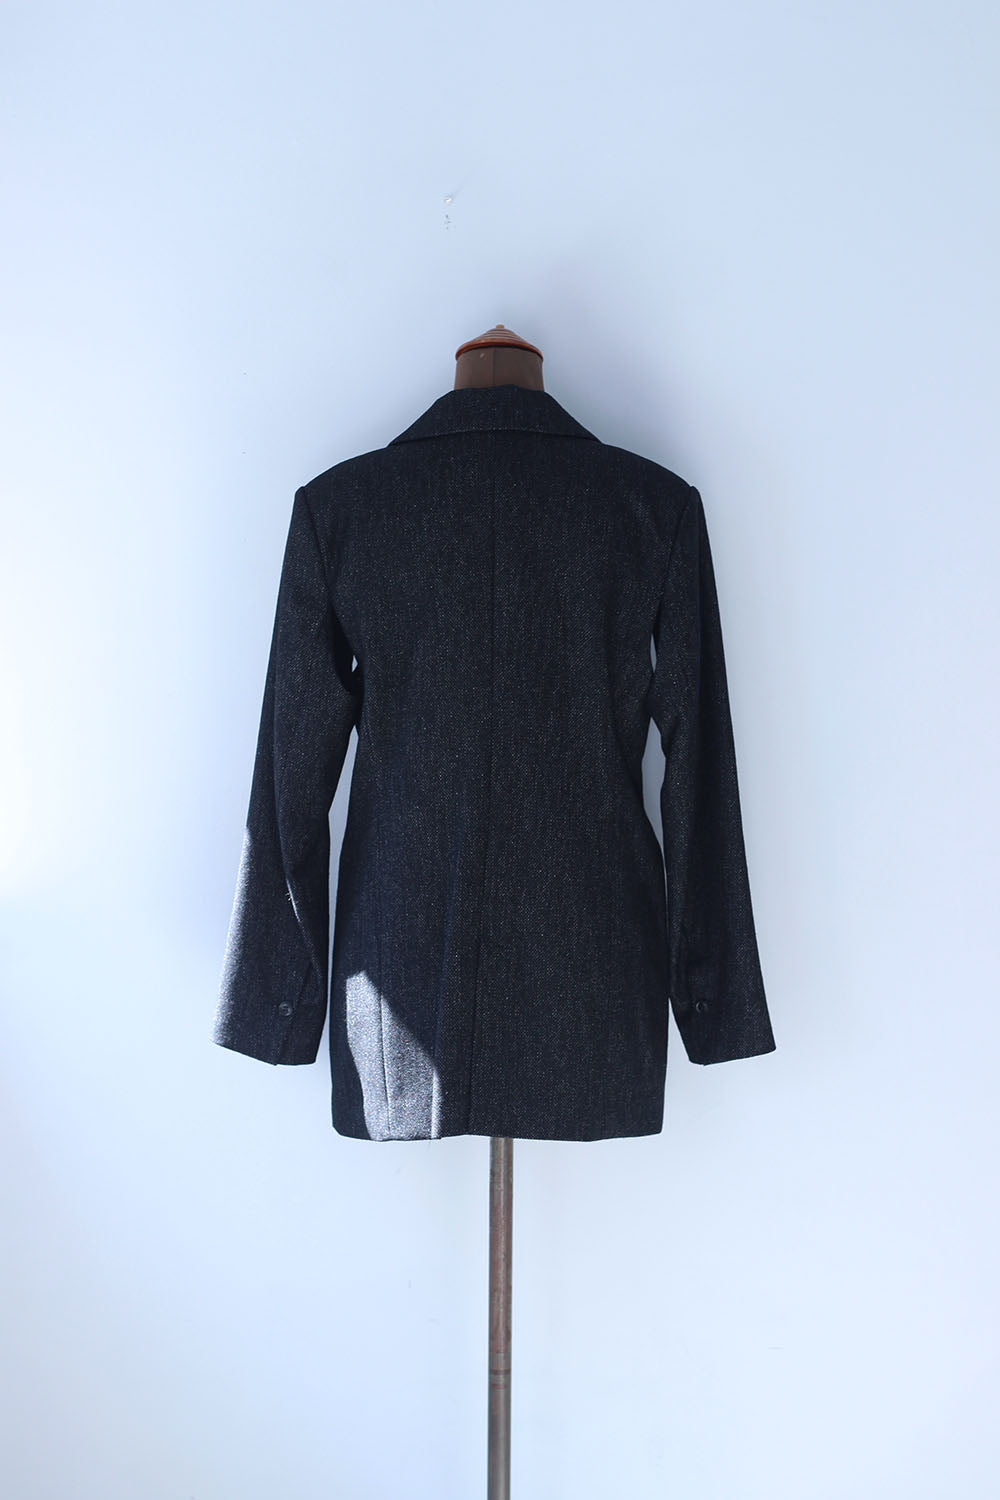 DOMENICO+SAVIO "tweed arrange sleeve jacket" (black)